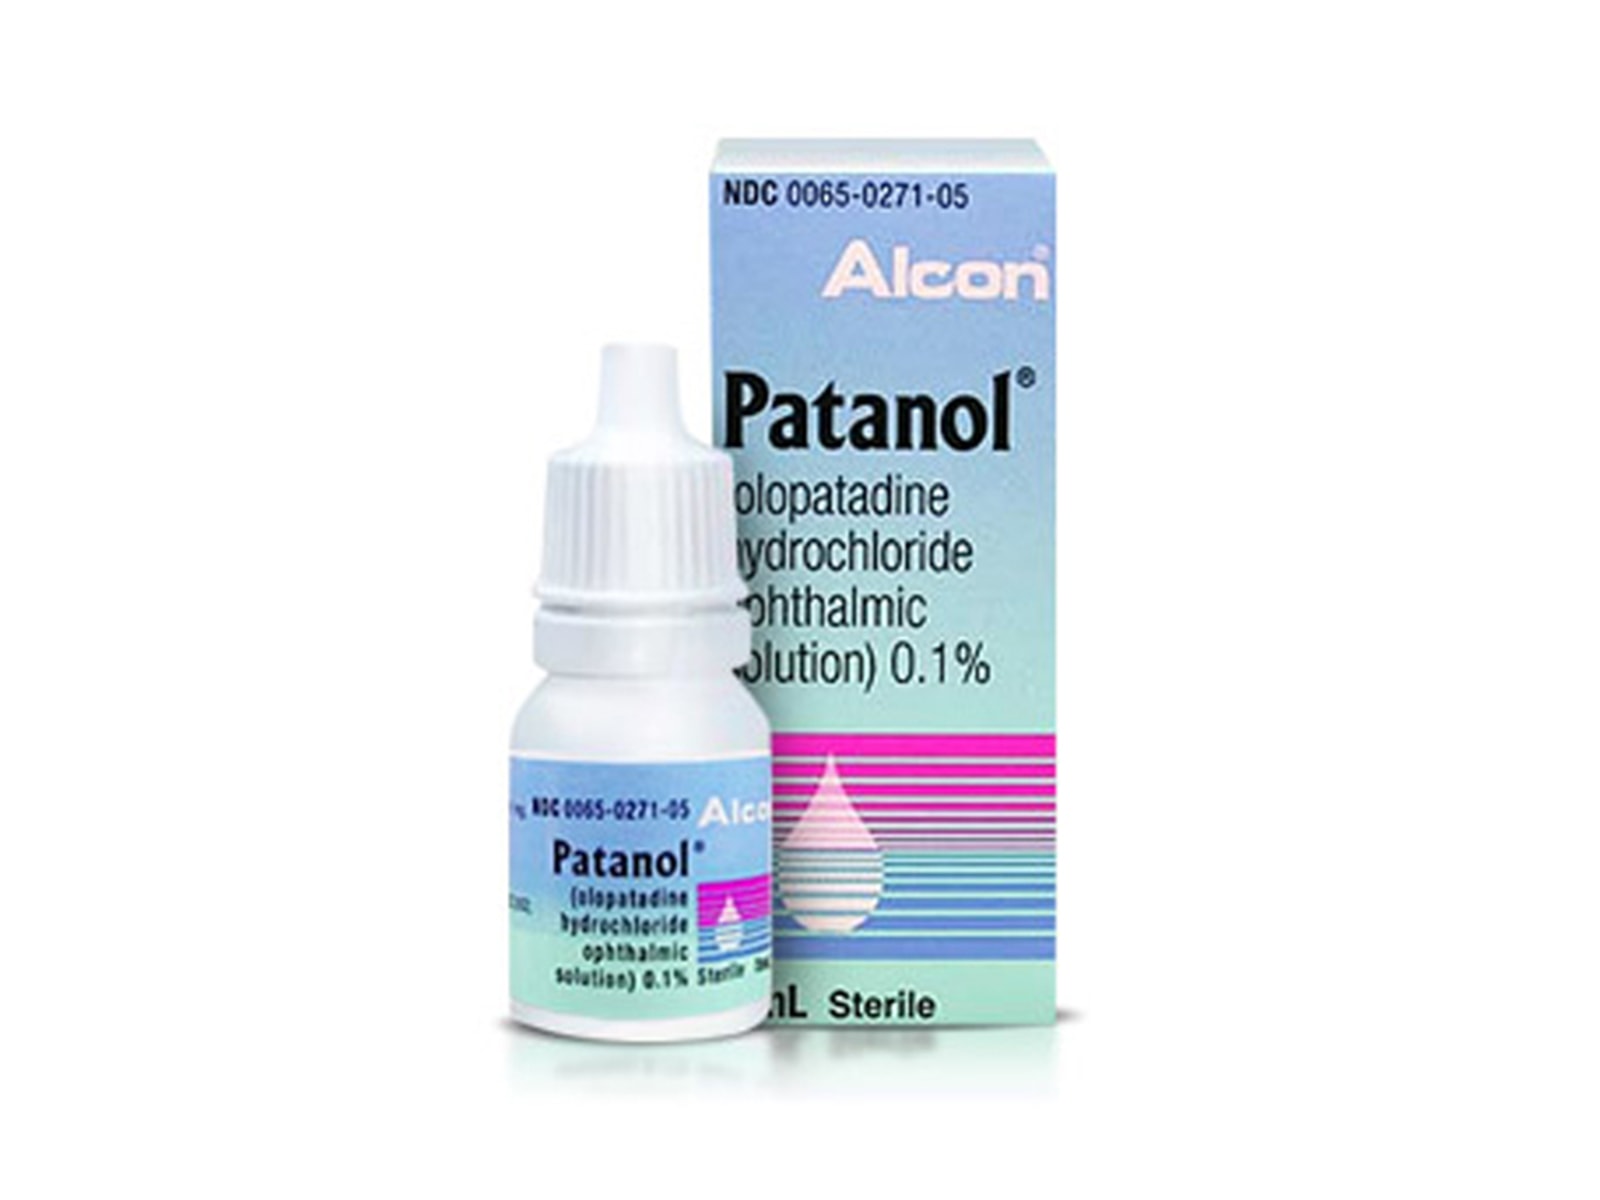 Alcon eye drops patanol career at humana